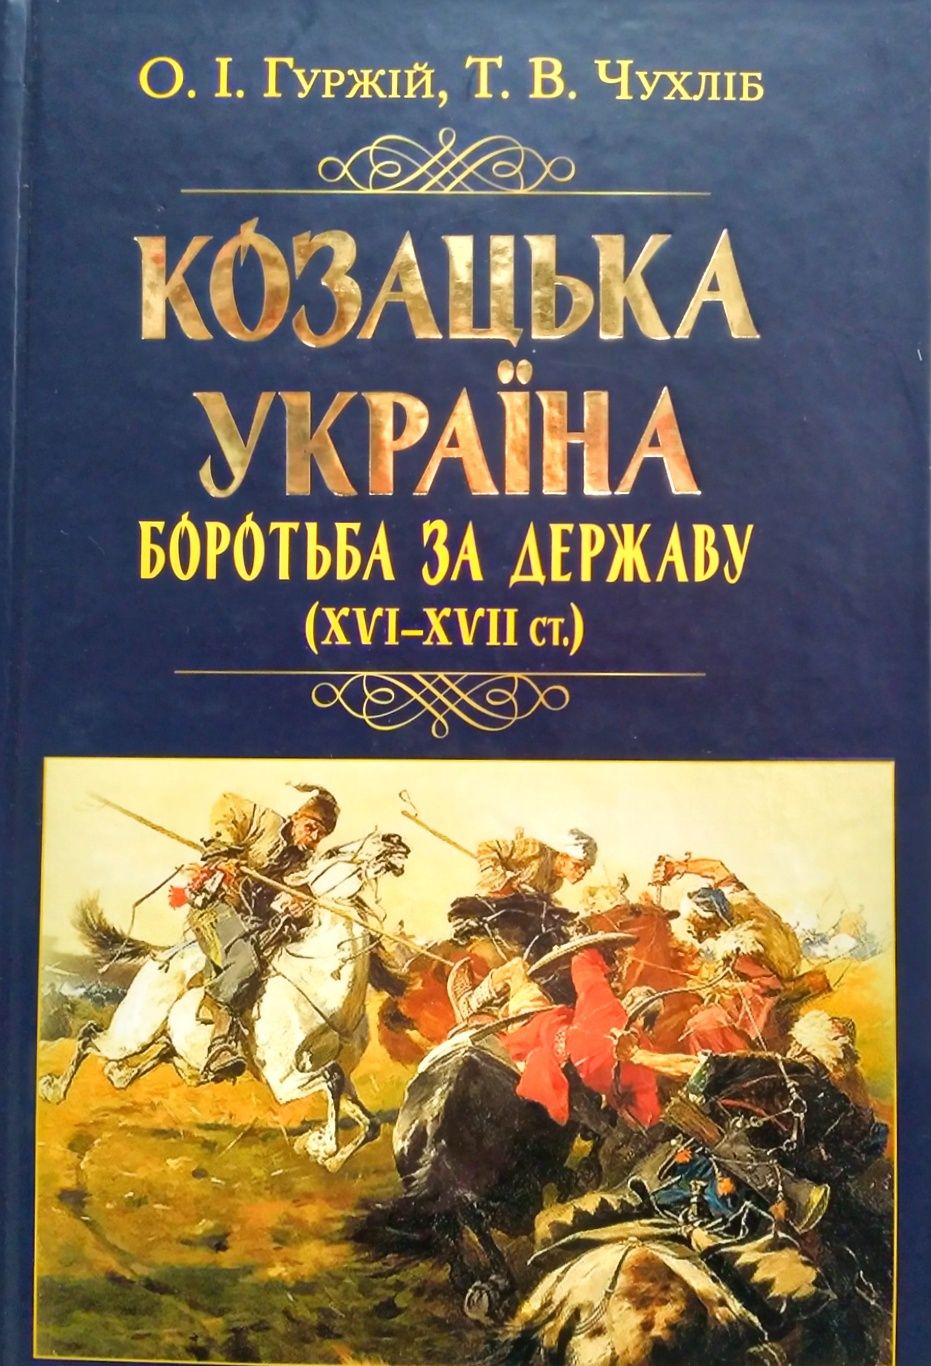 Козацька Україна. Боротьба за державу (XVI-XVII ст.)